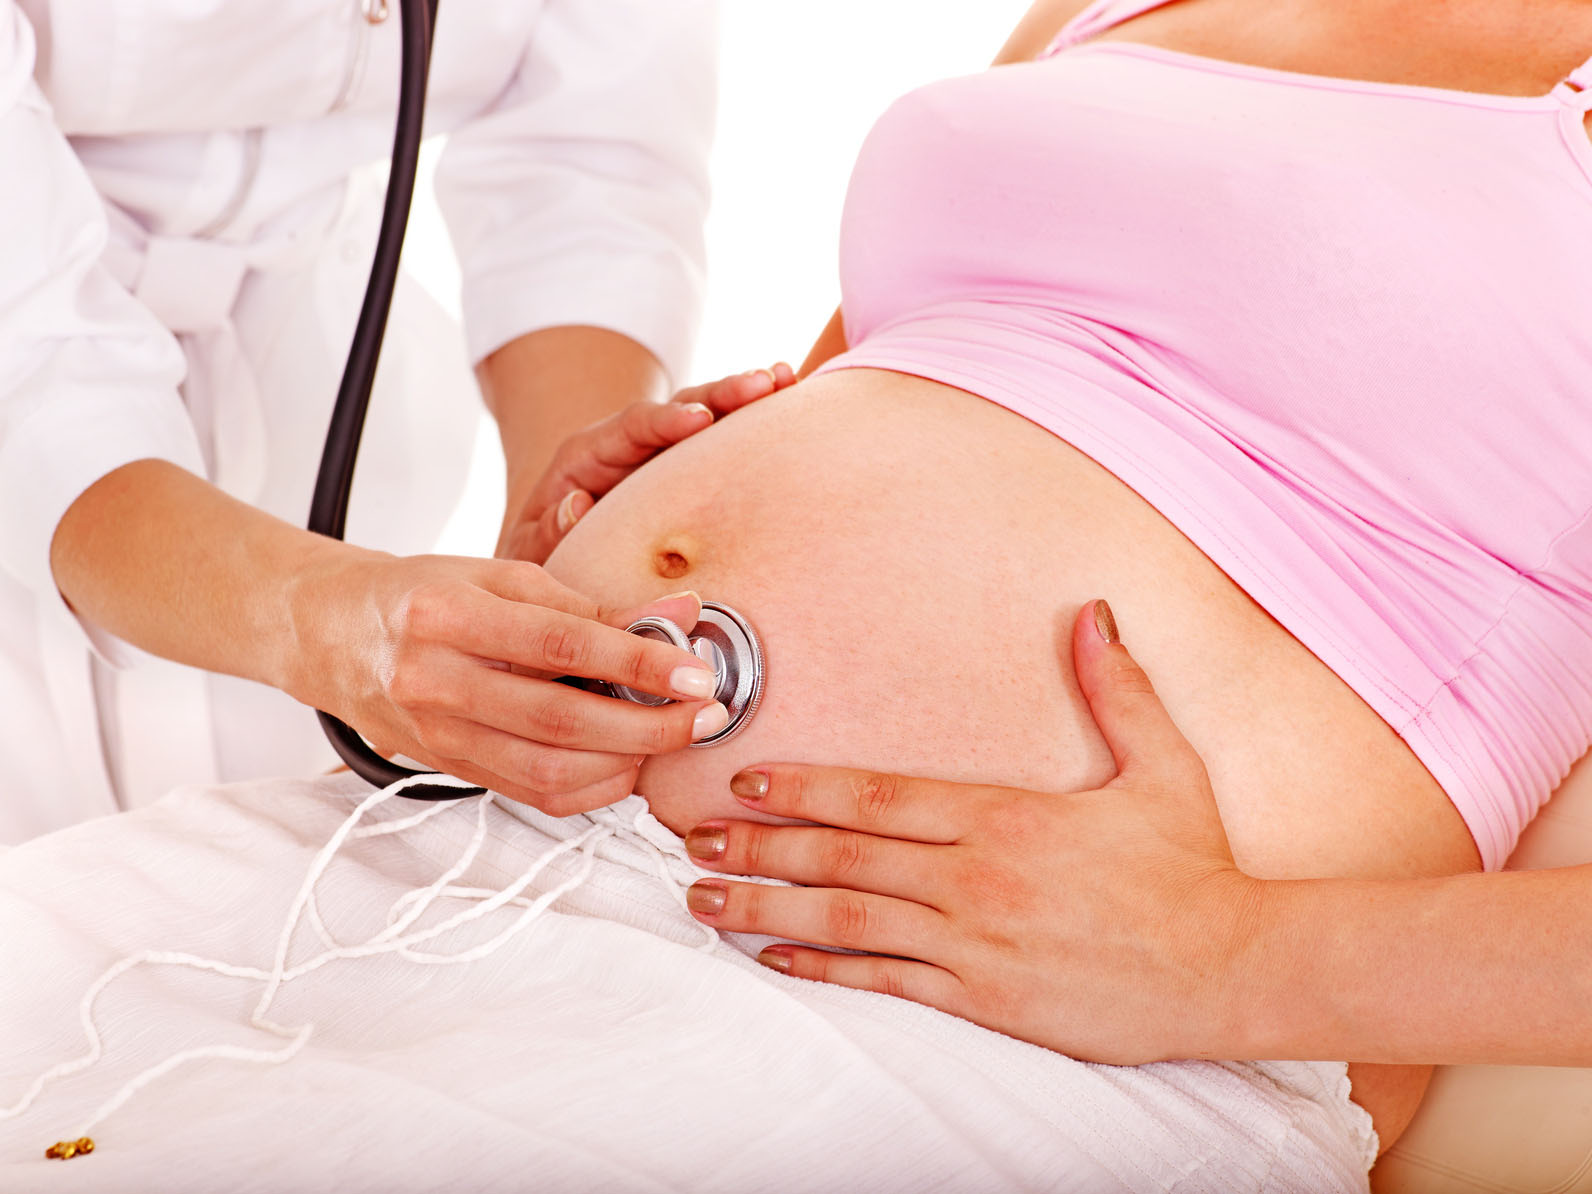 23-я акушерская неделя беременности: изменения в организме, развитие плода